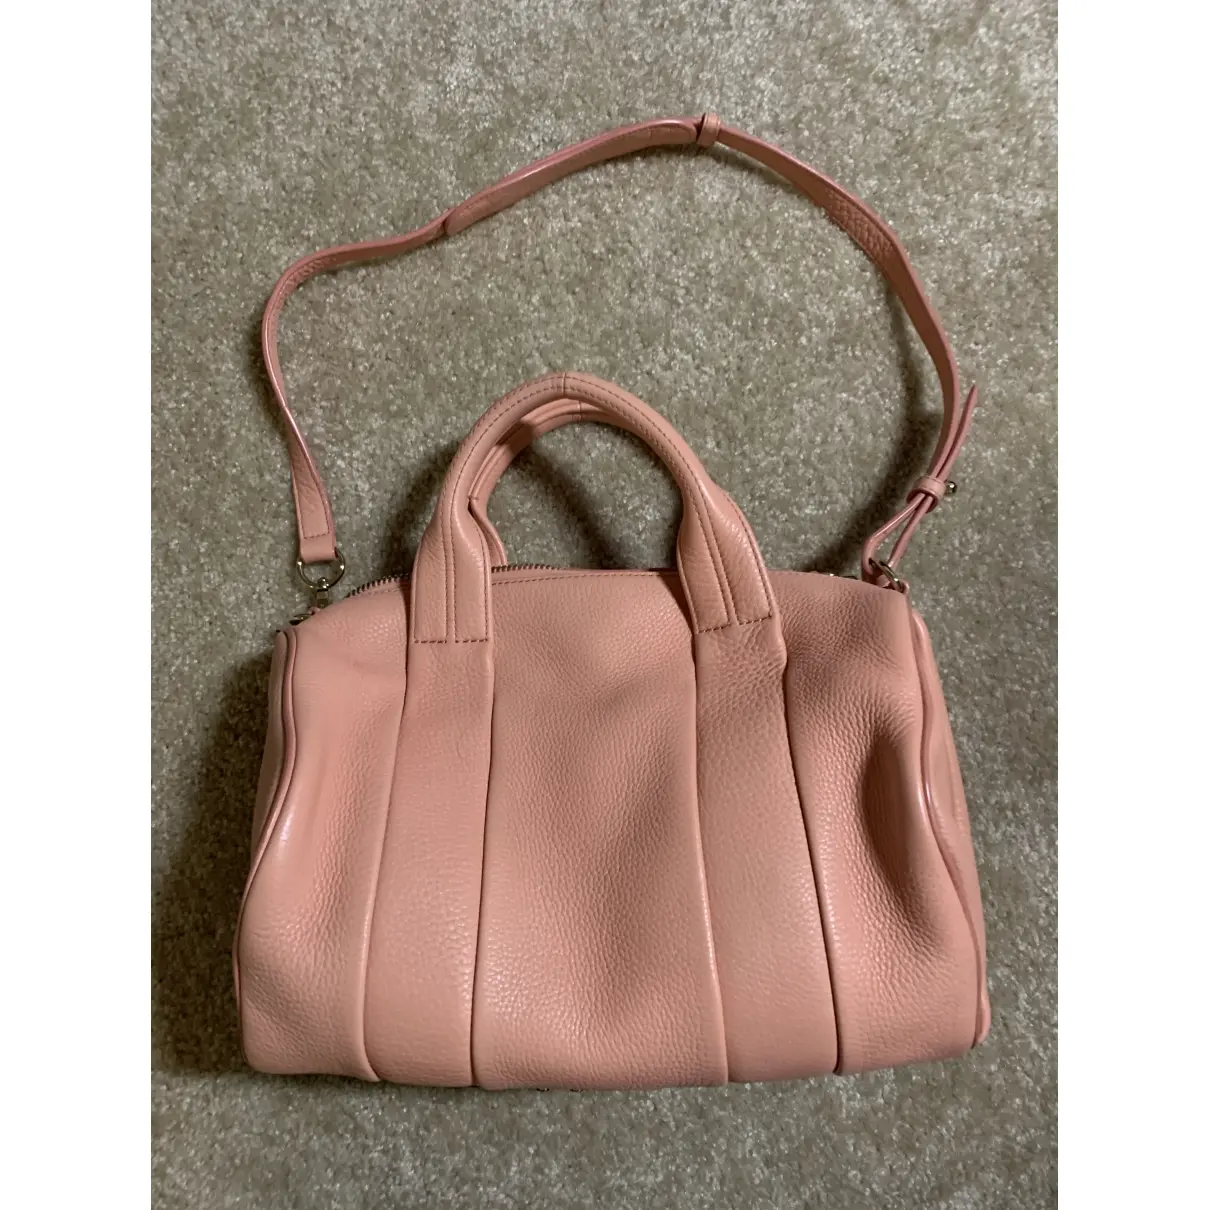 Alexander Wang Rocco leather handbag for sale